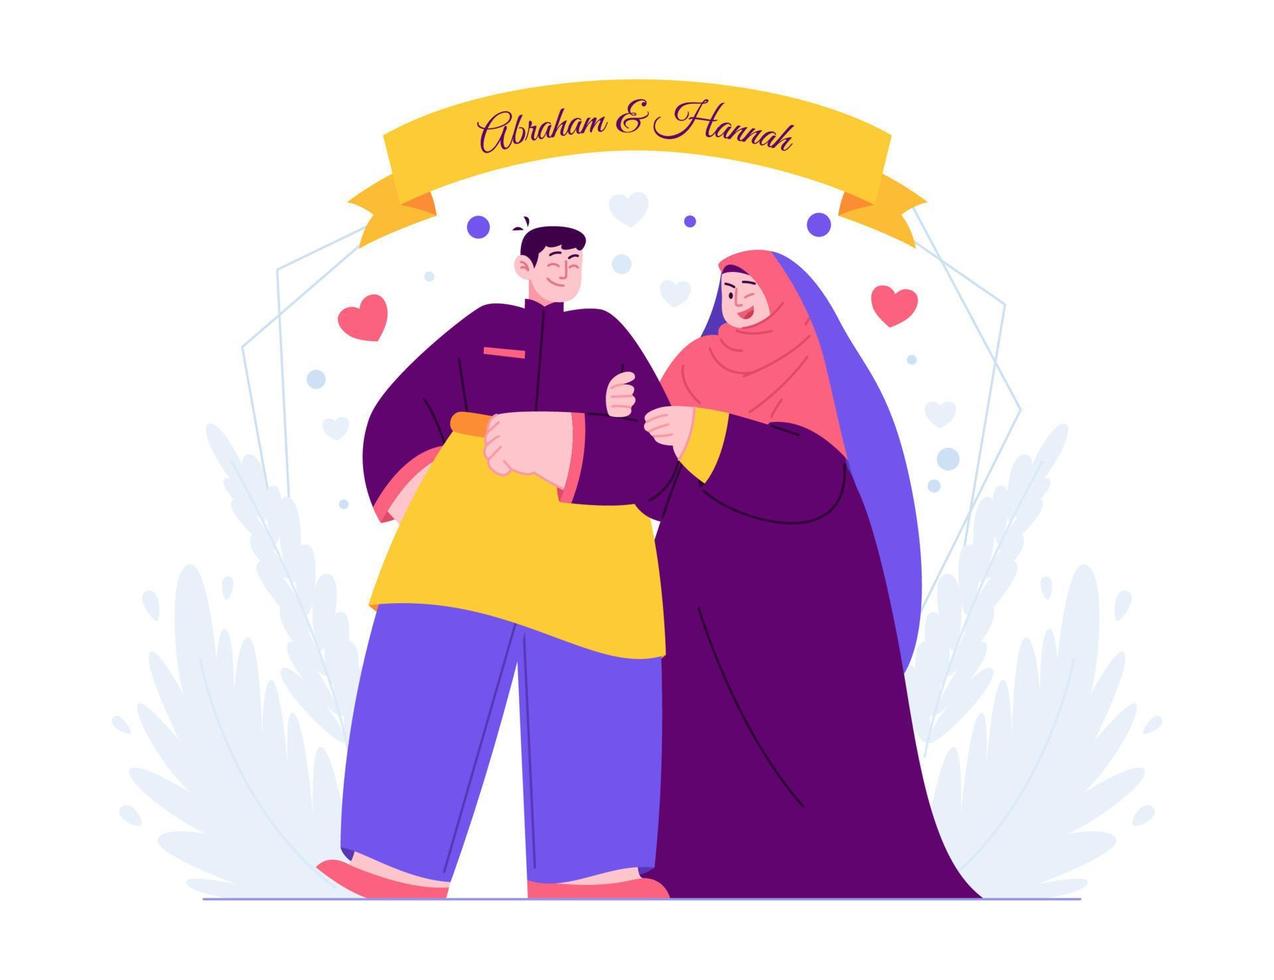 islamitische schattig paar bruiloft uitnodiging sjabloon concept vector illustratie idee voor bestemmingspagina sjabloon, huwelijksdag, verloving, romantiek ceremonie, voor wenskaart handgetekende vlakke stijl